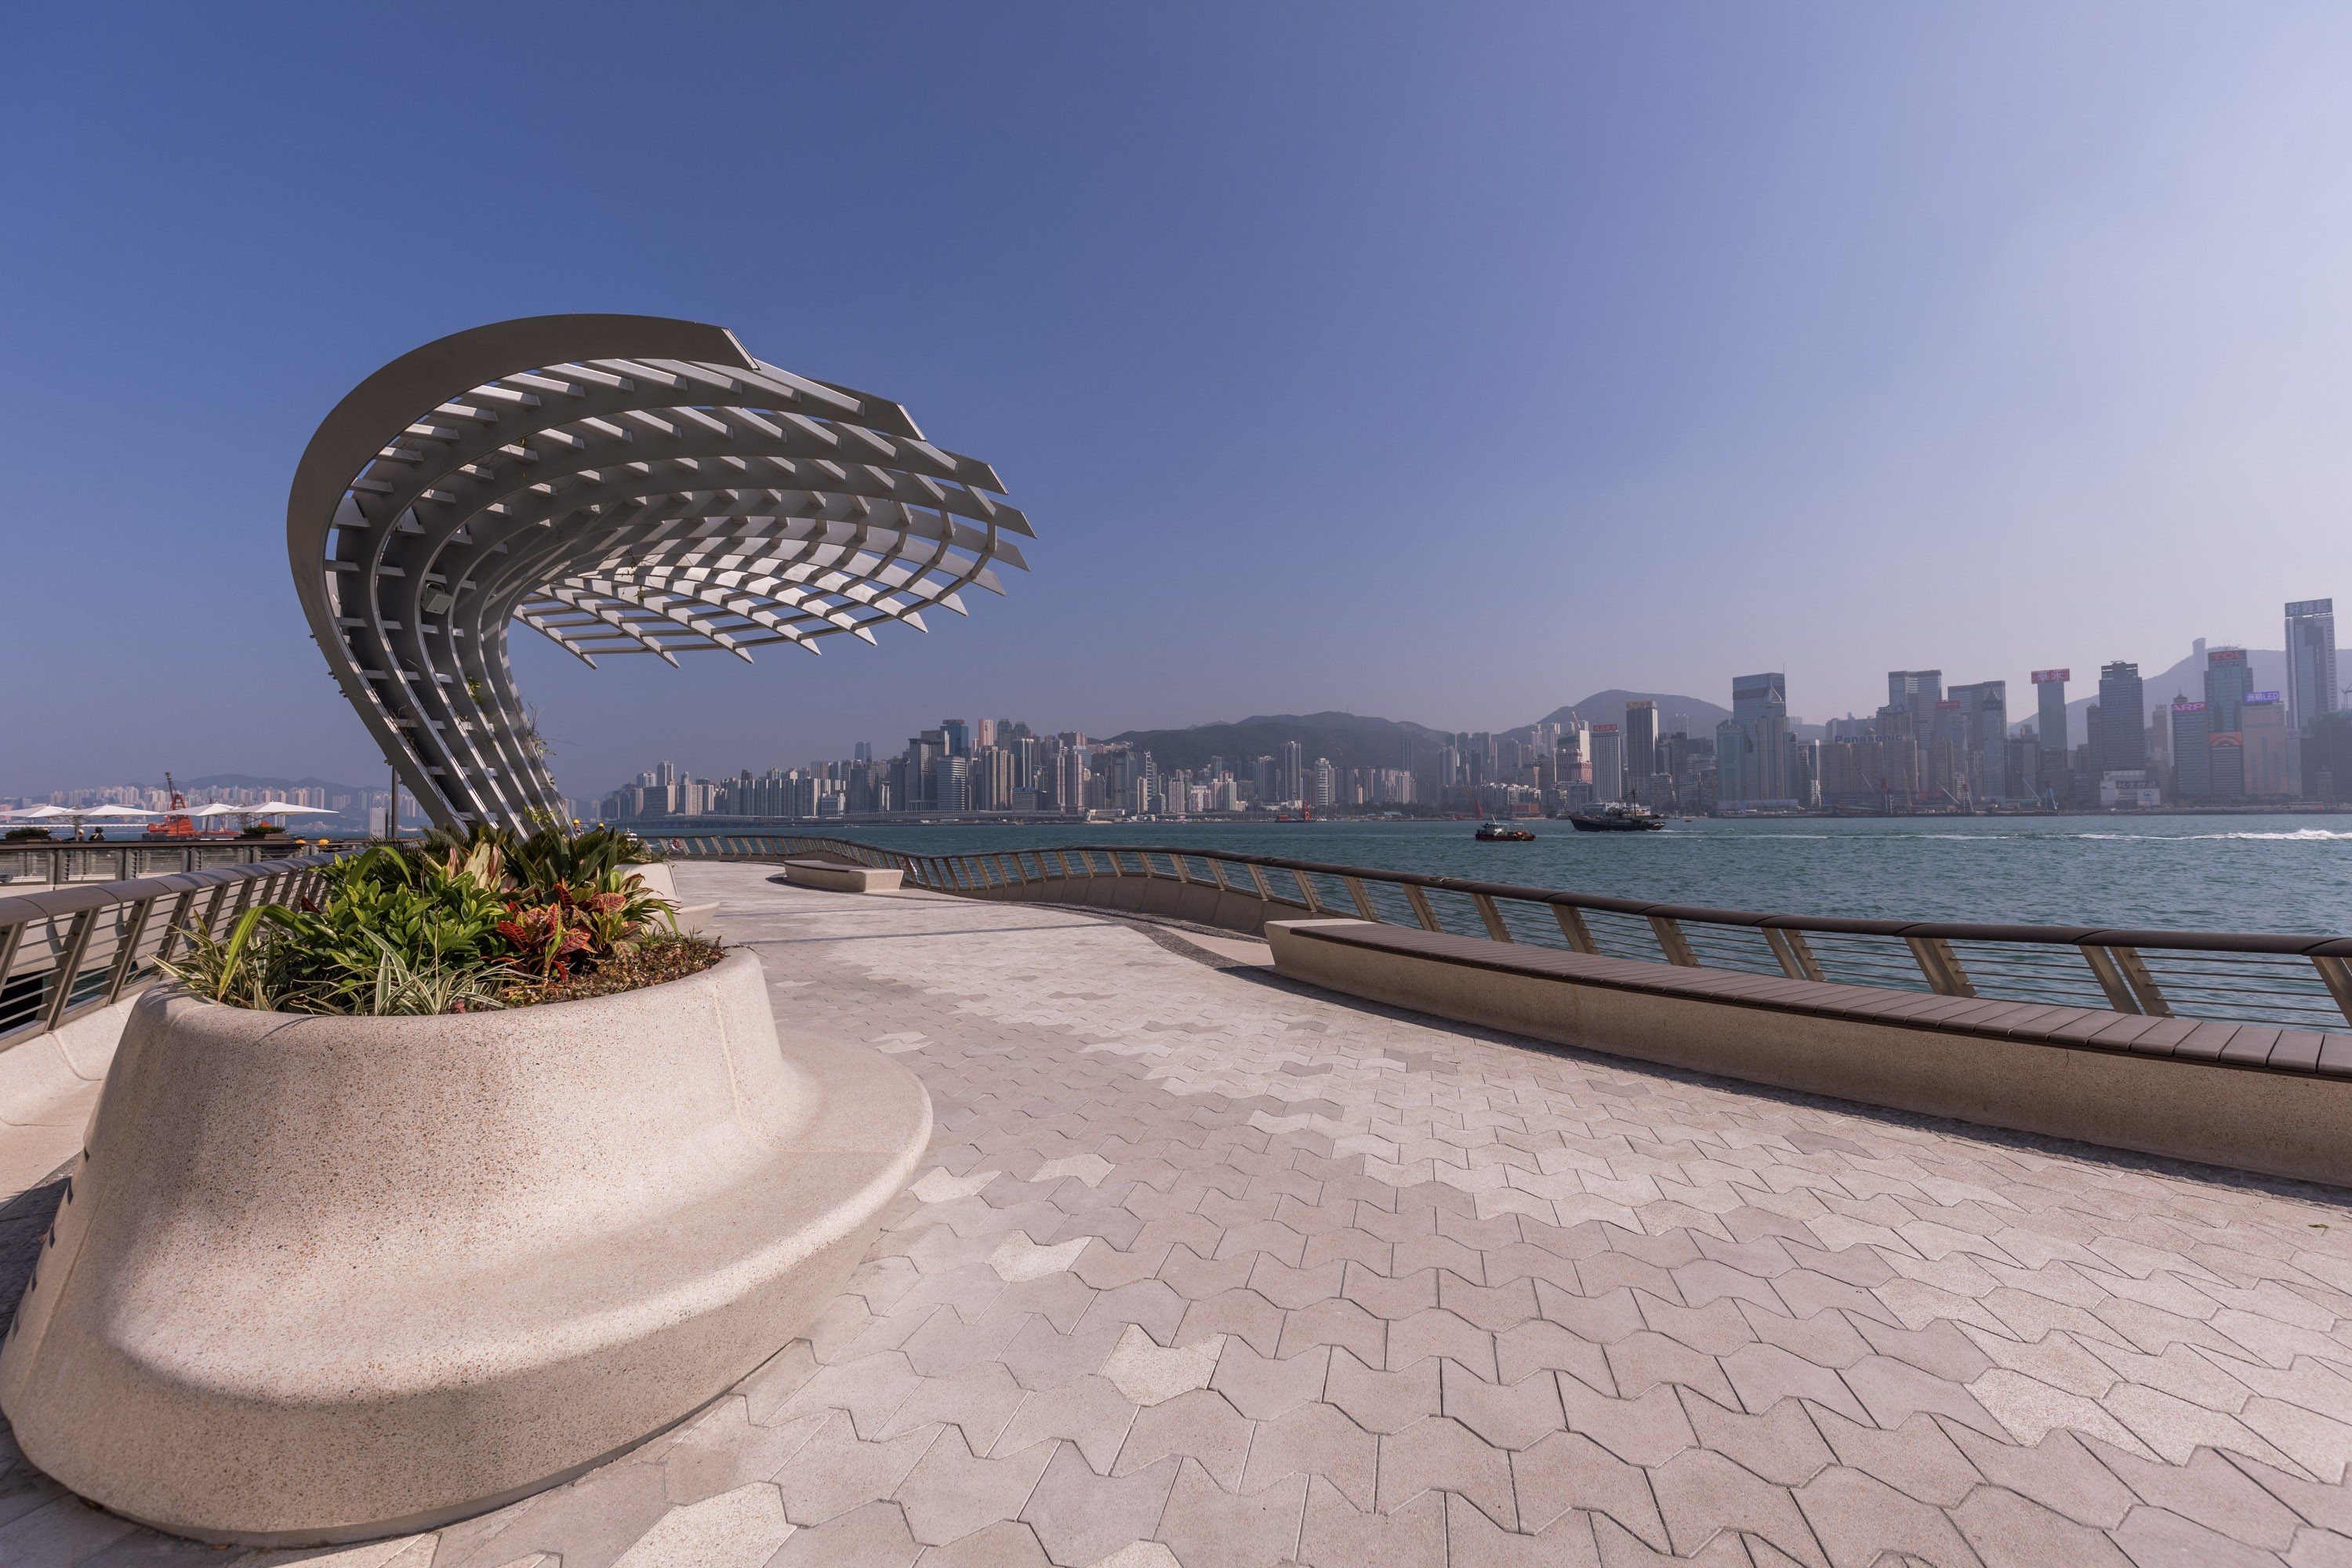 The new Avenue of Stars, in Tsim Sha Tsui, designed by landscape architect James Corner.